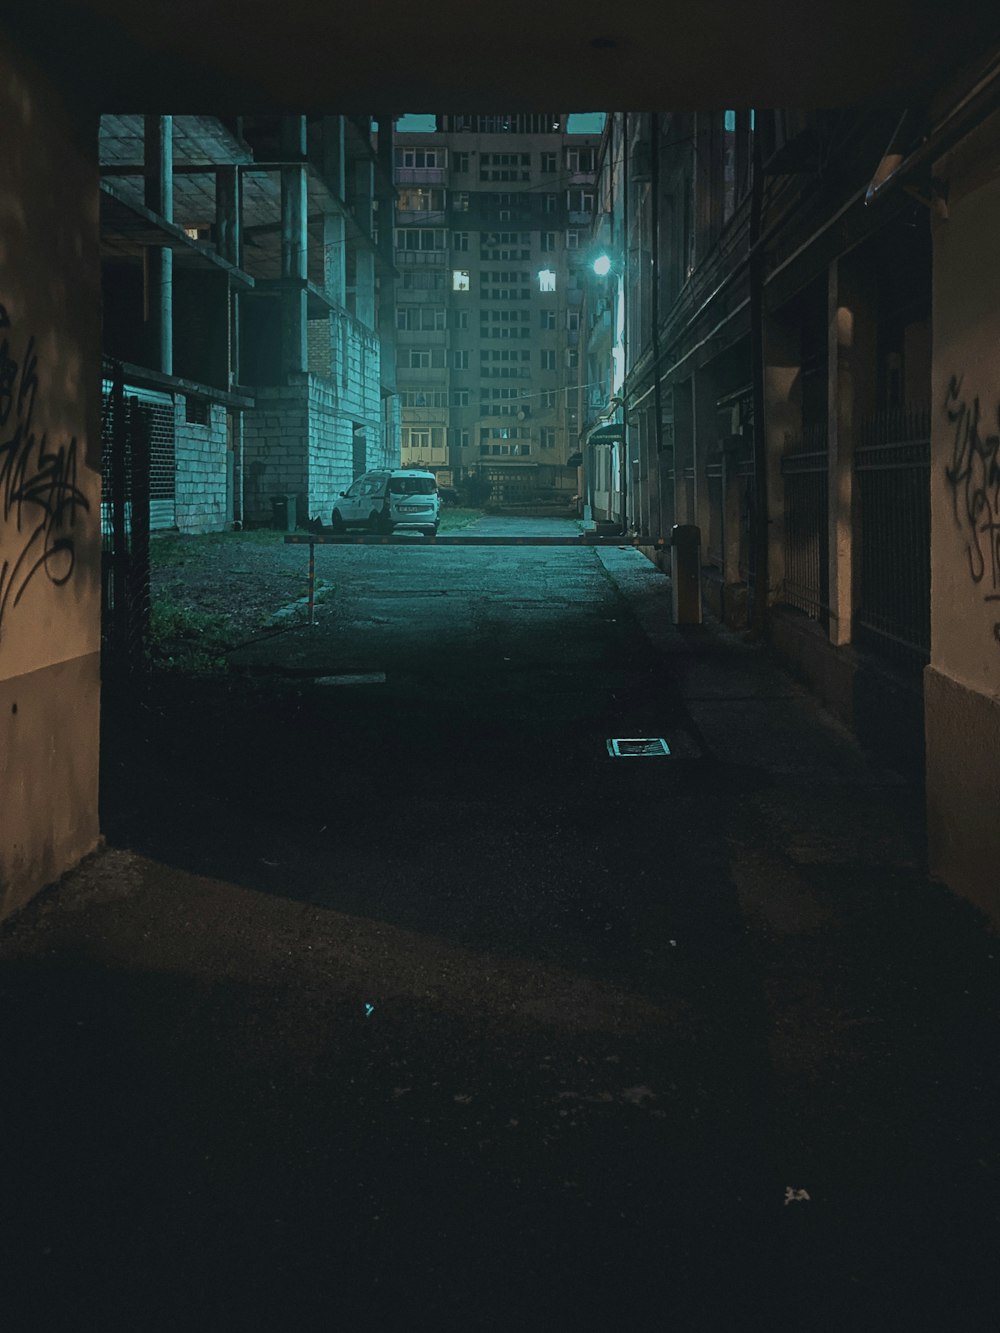 corredor vazio com luz acesa durante a noite